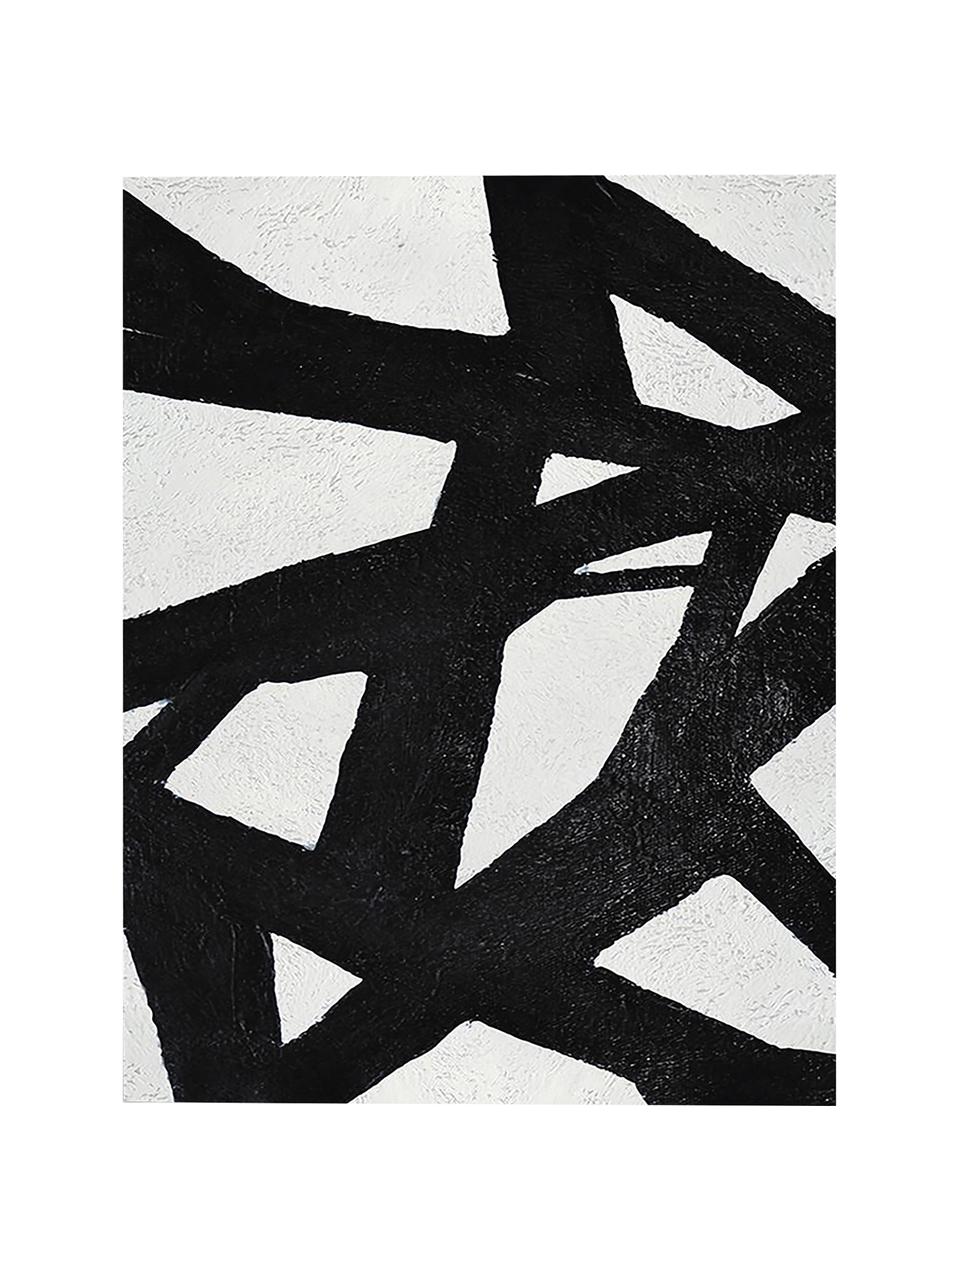 Leinwanddruck Roads, Bild: Digitaldruck auf Leinen, Schwarz, Weiss, 60 x 80 cm